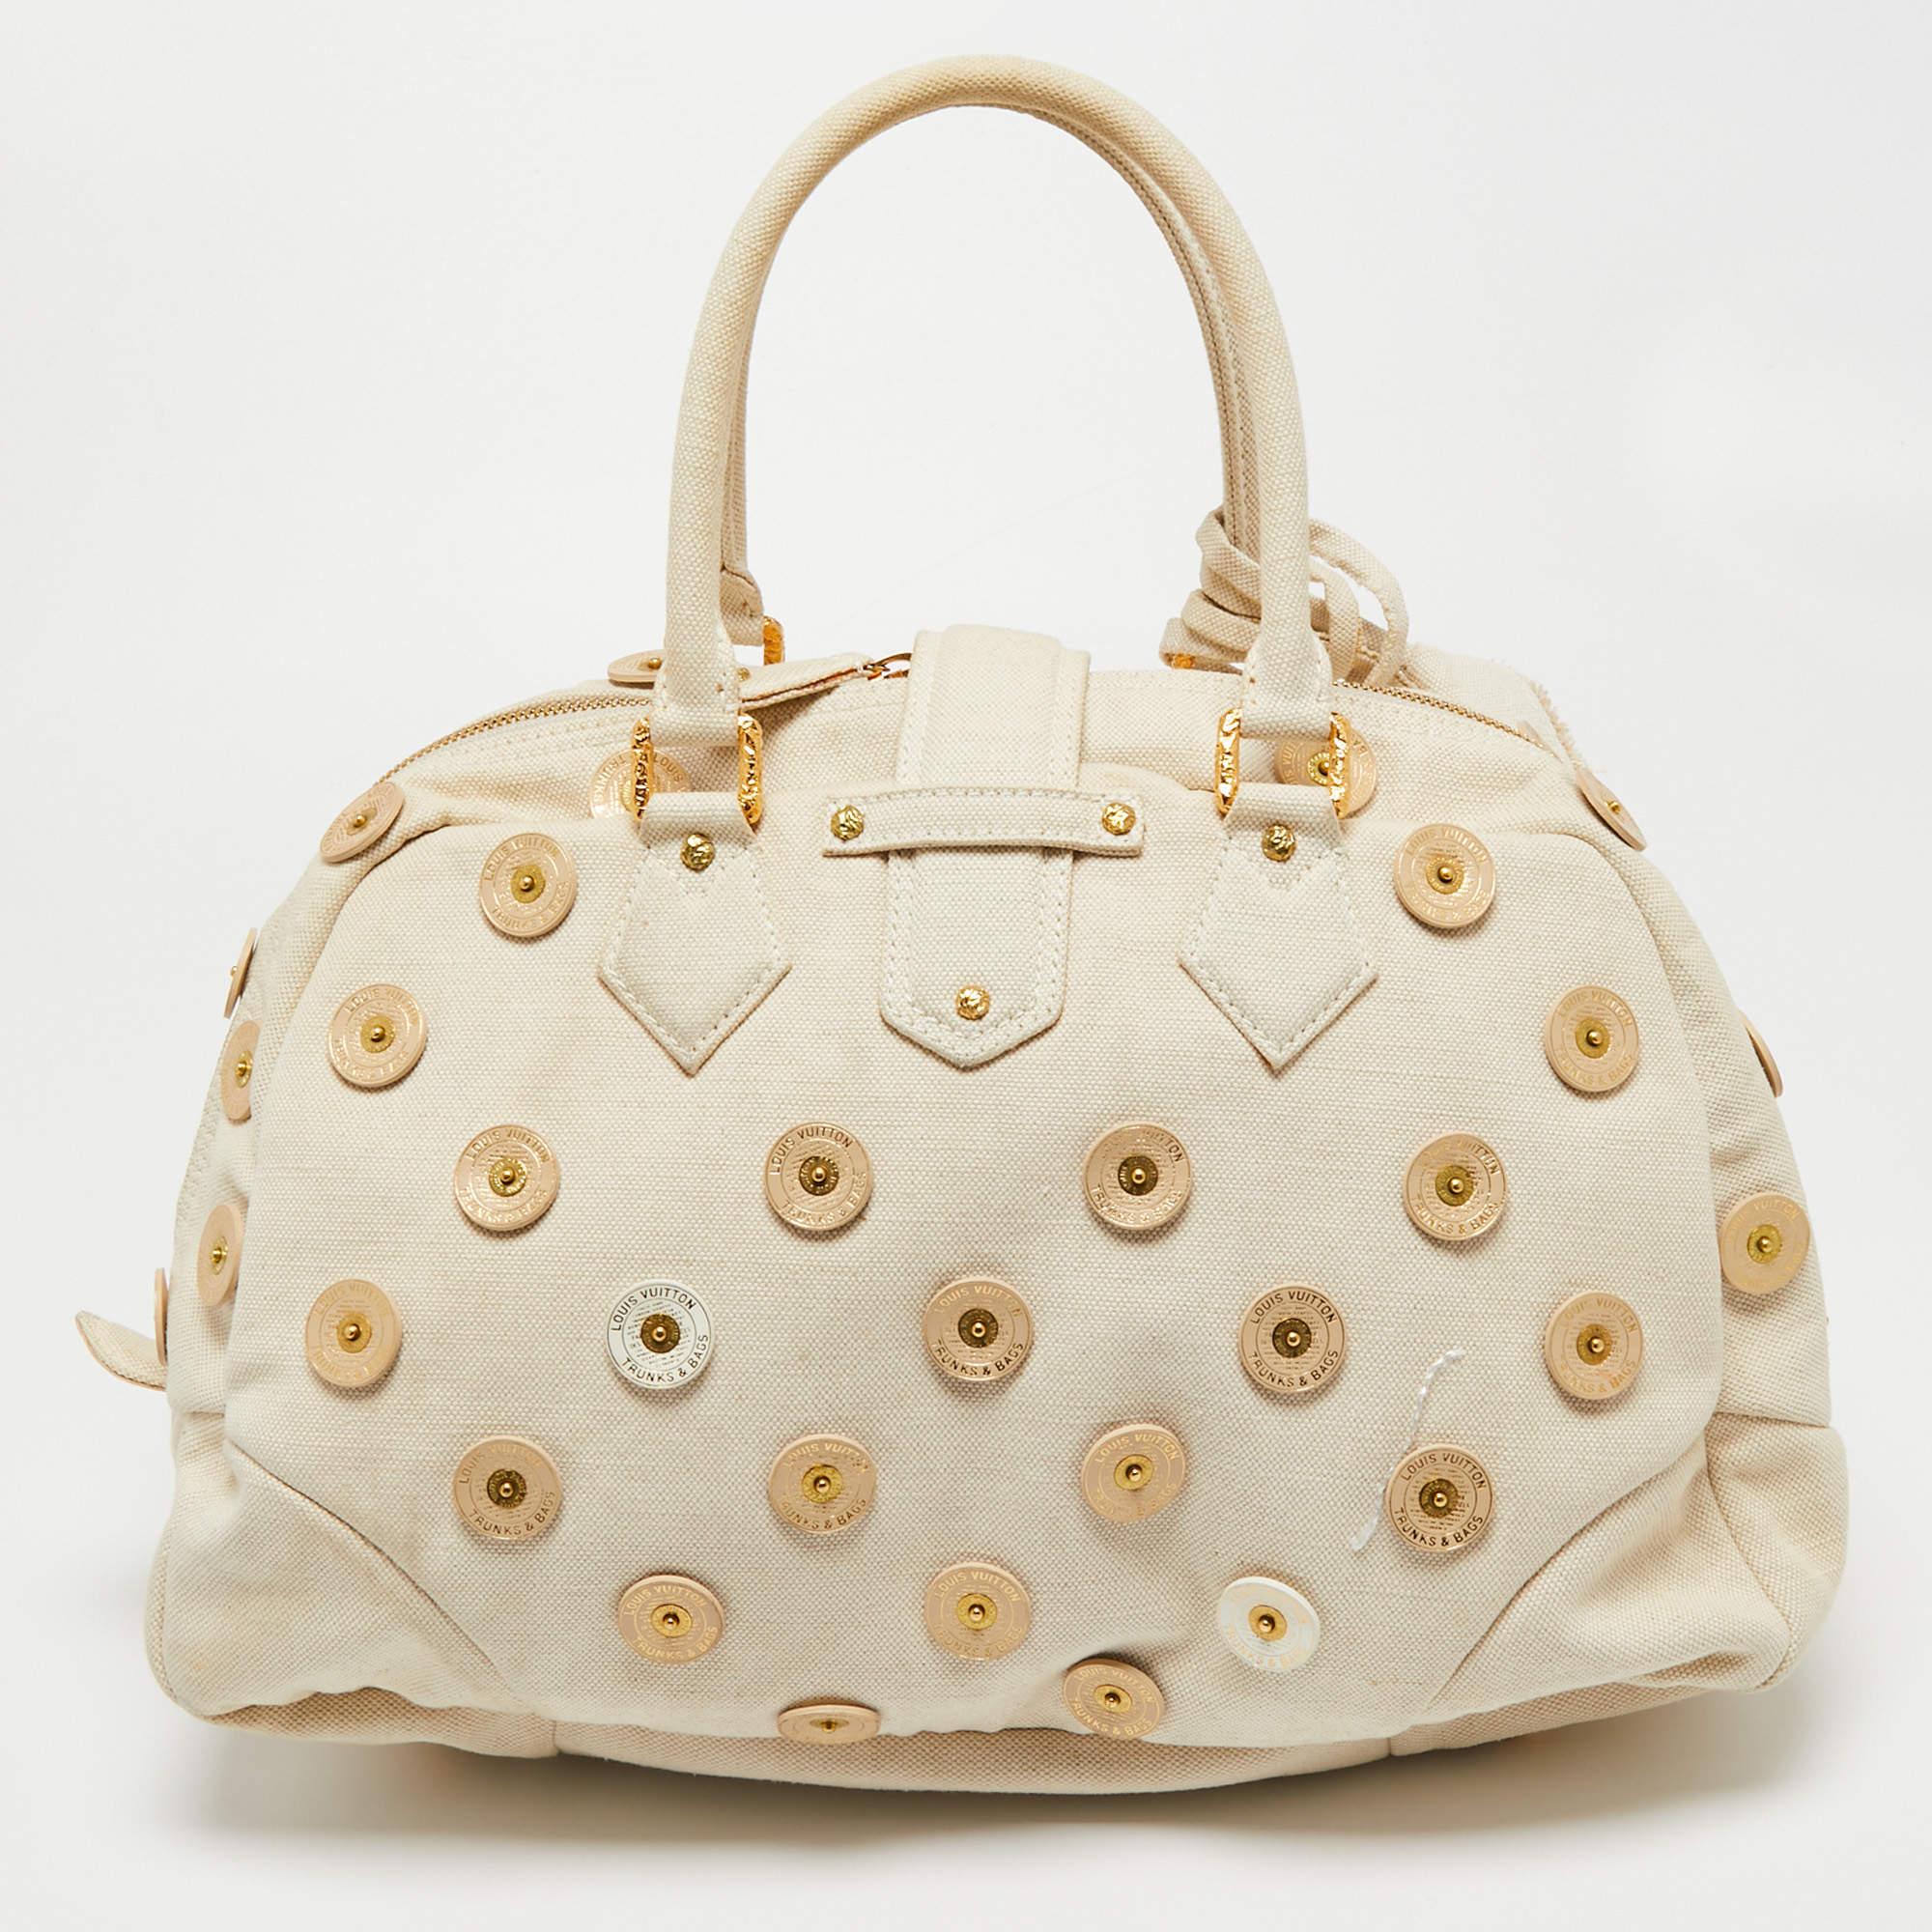 Louis Vuitton Authenticated Bowly Handbag